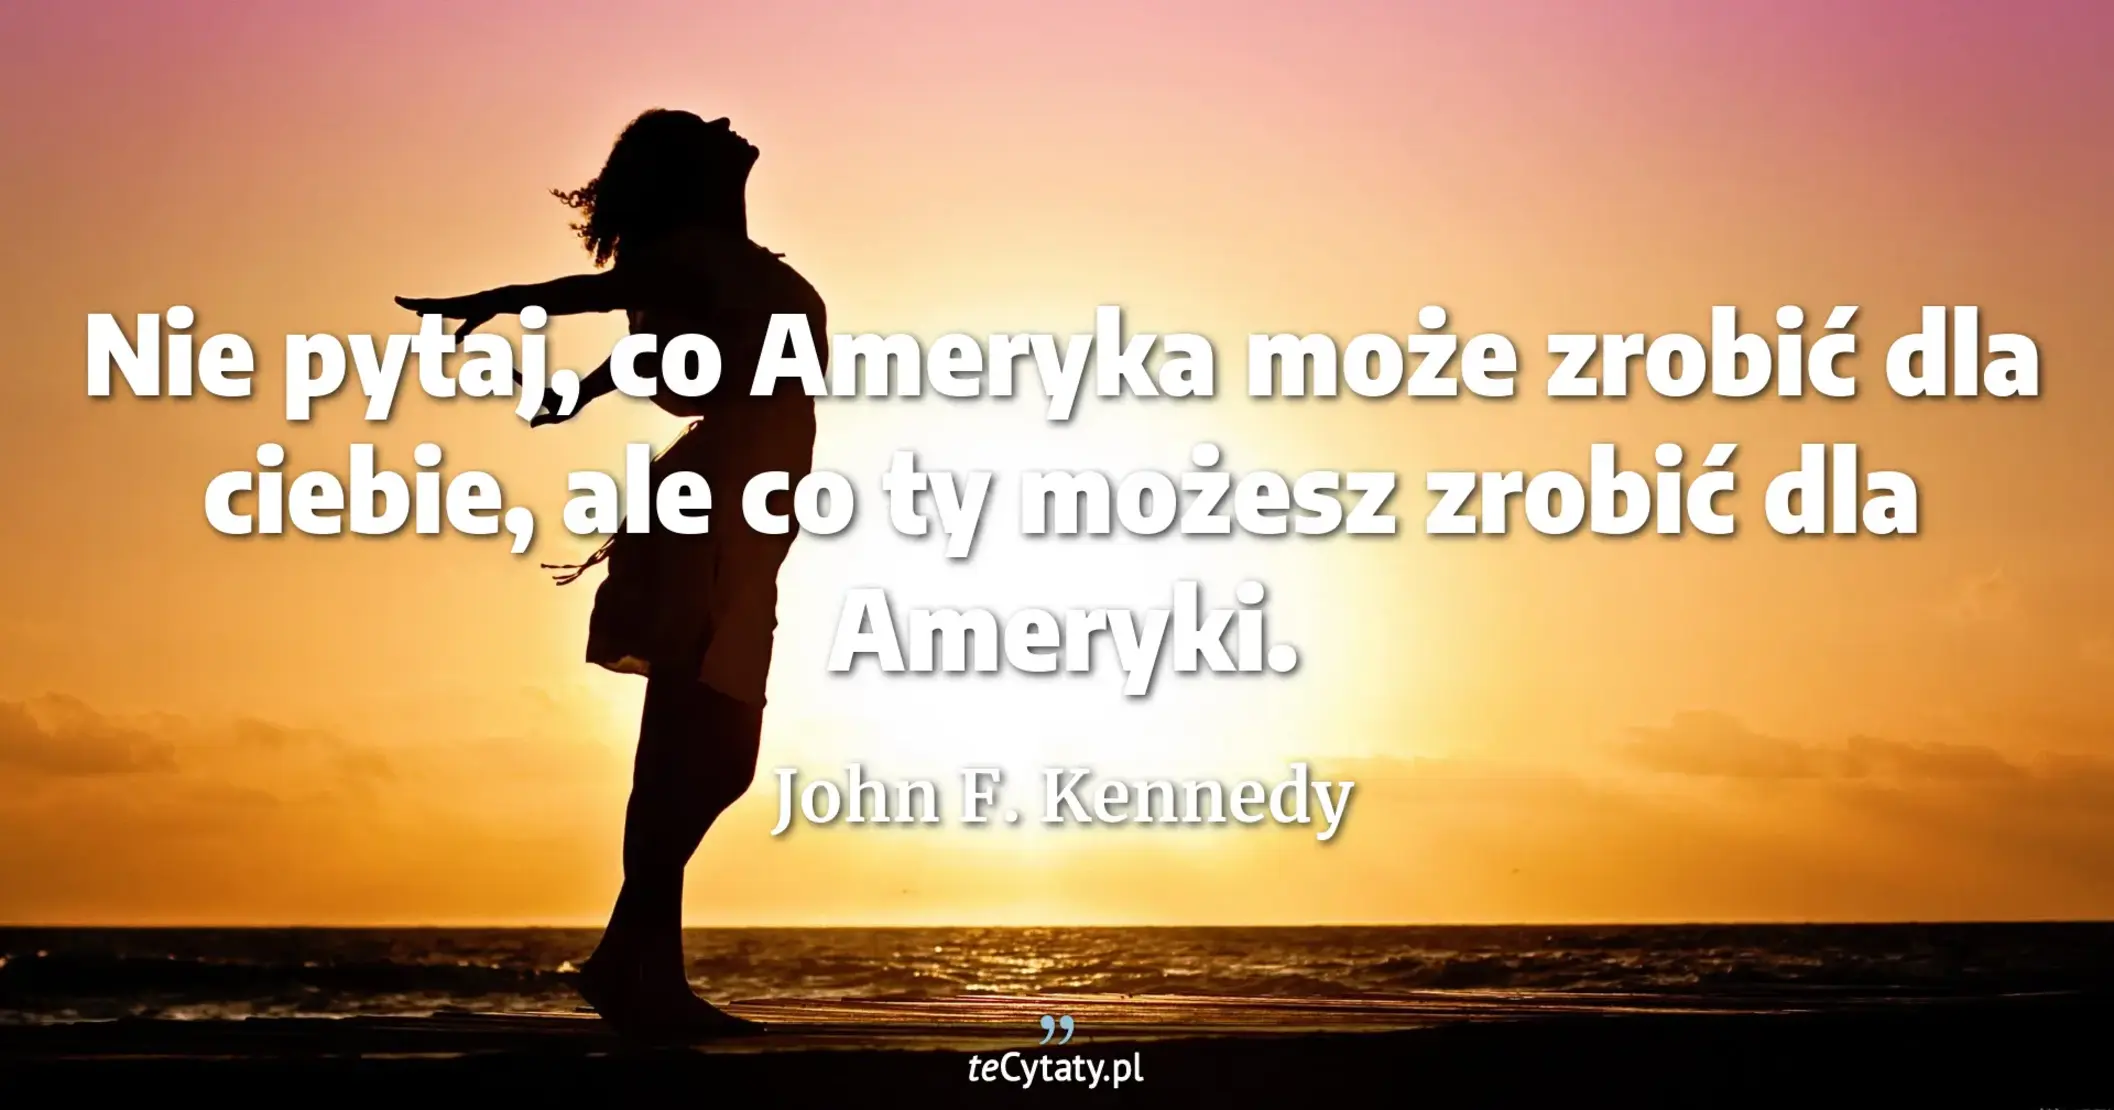 Nie pytaj, co Ameryka może zrobić dla ciebie, ale co ty możesz zrobić dla Ameryki. - John F. Kennedy